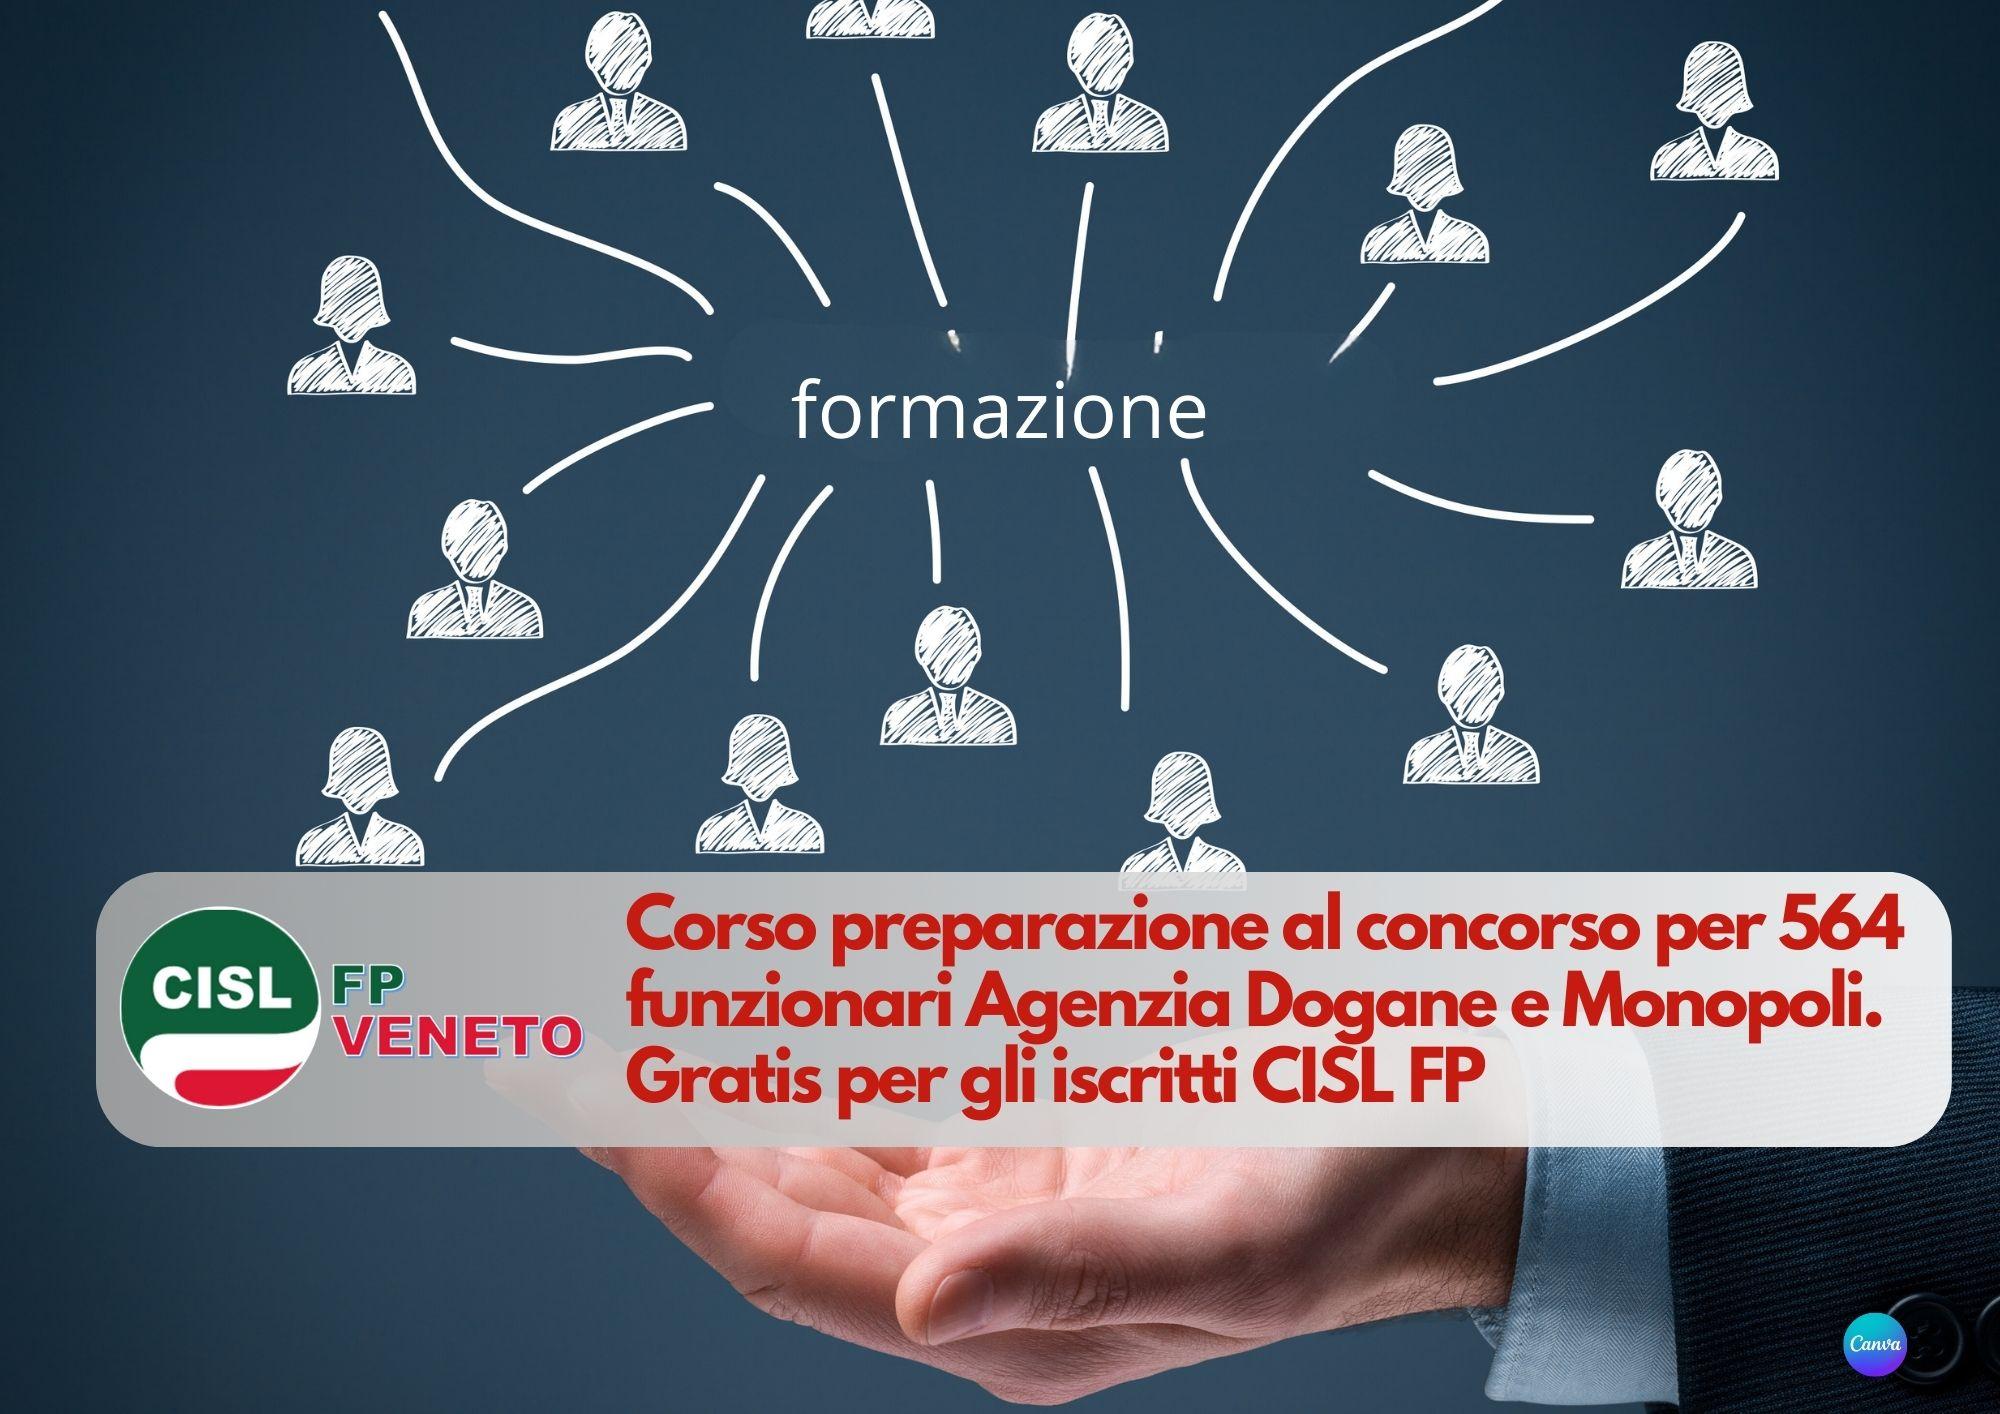 CISL FP Veneto. Concorso 564 funzionari Agenzia Dogane e Monopoli: corso di preparazione